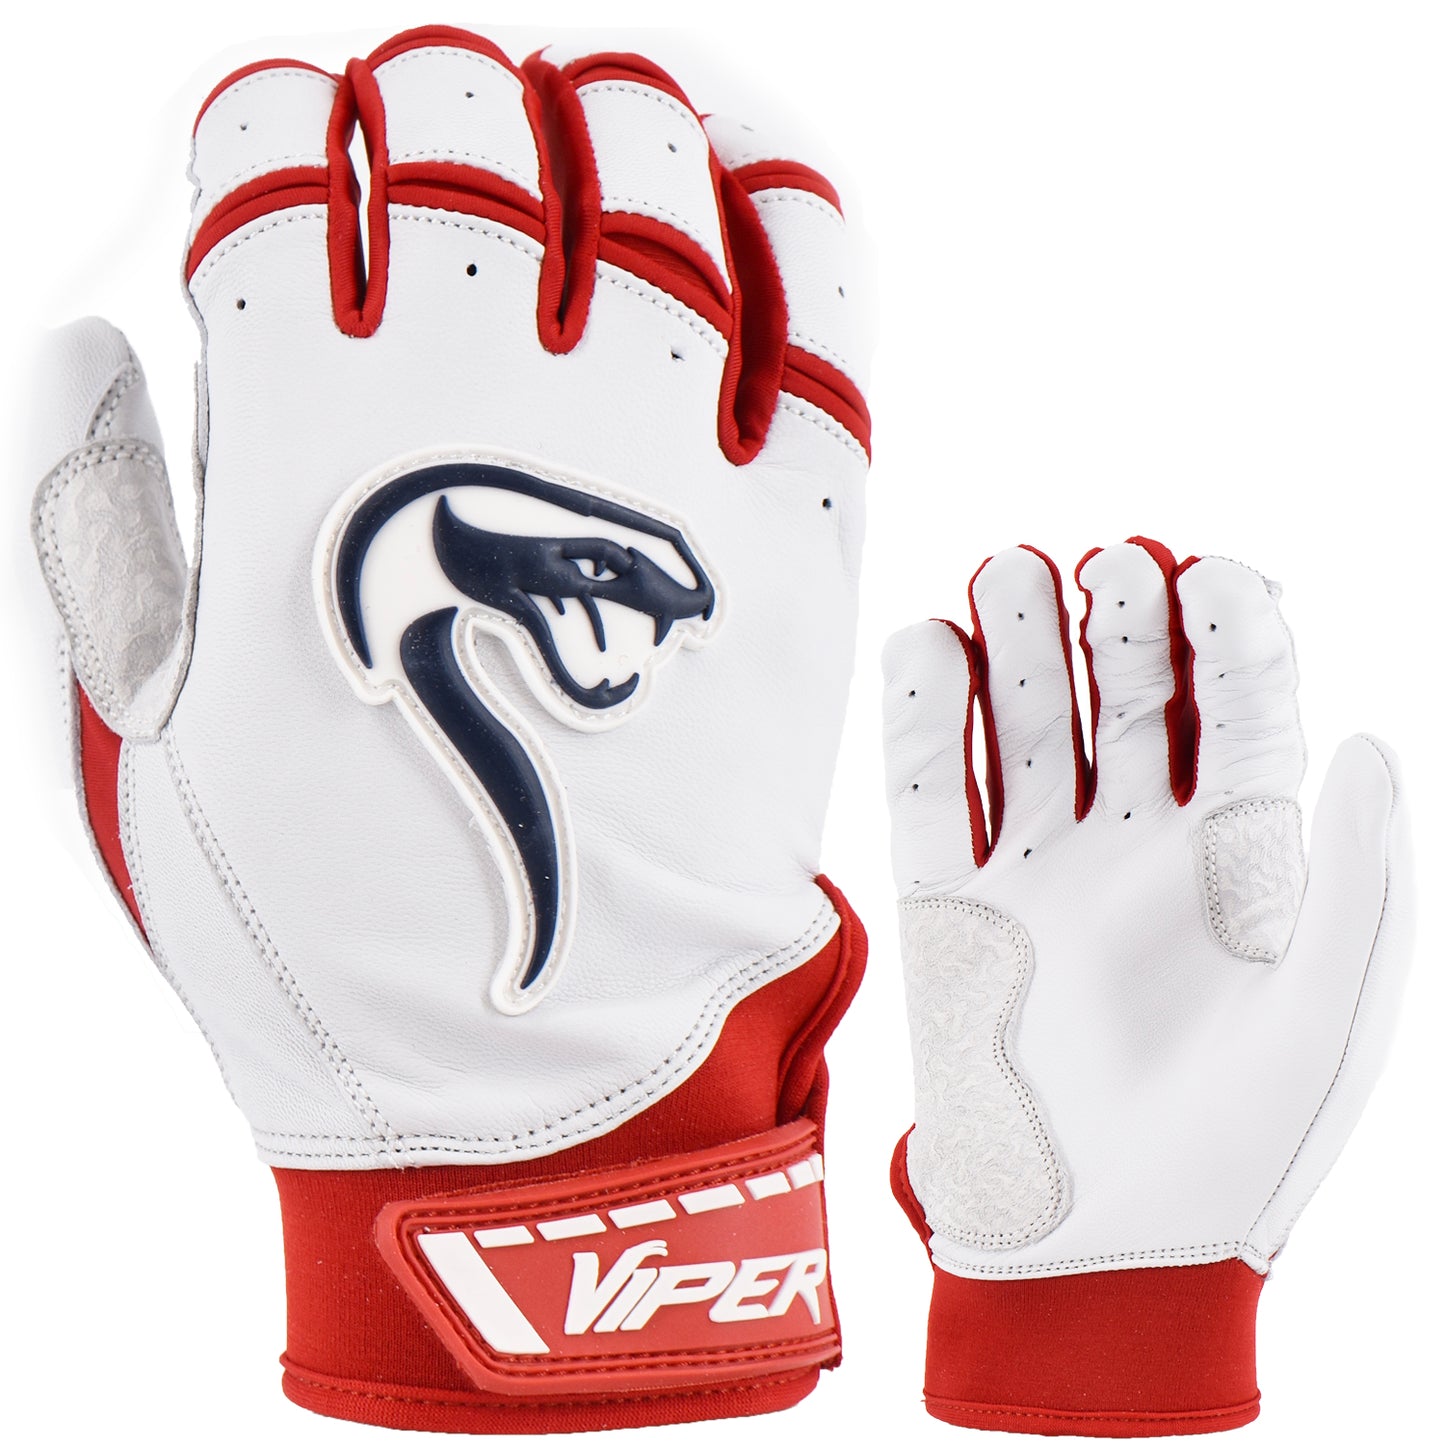 Viper Grindstone Short Cuff Batting Glove - White/Red/Navy